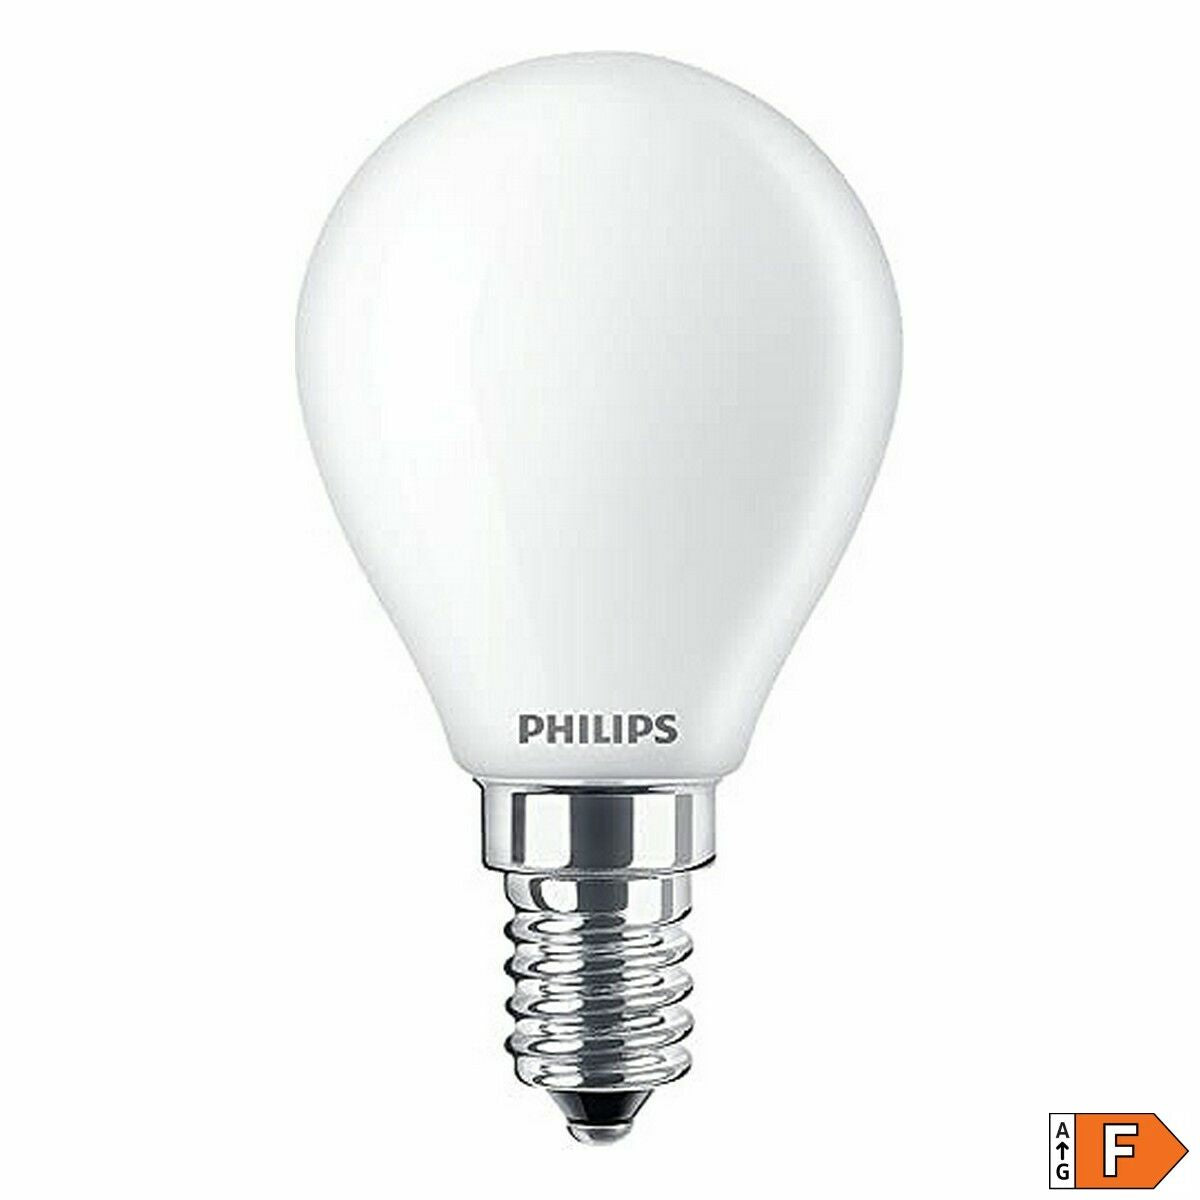 Ledlamp Philips F 4,3 W E14 470 lm 4,5 x 8,2 cm (6500 K)